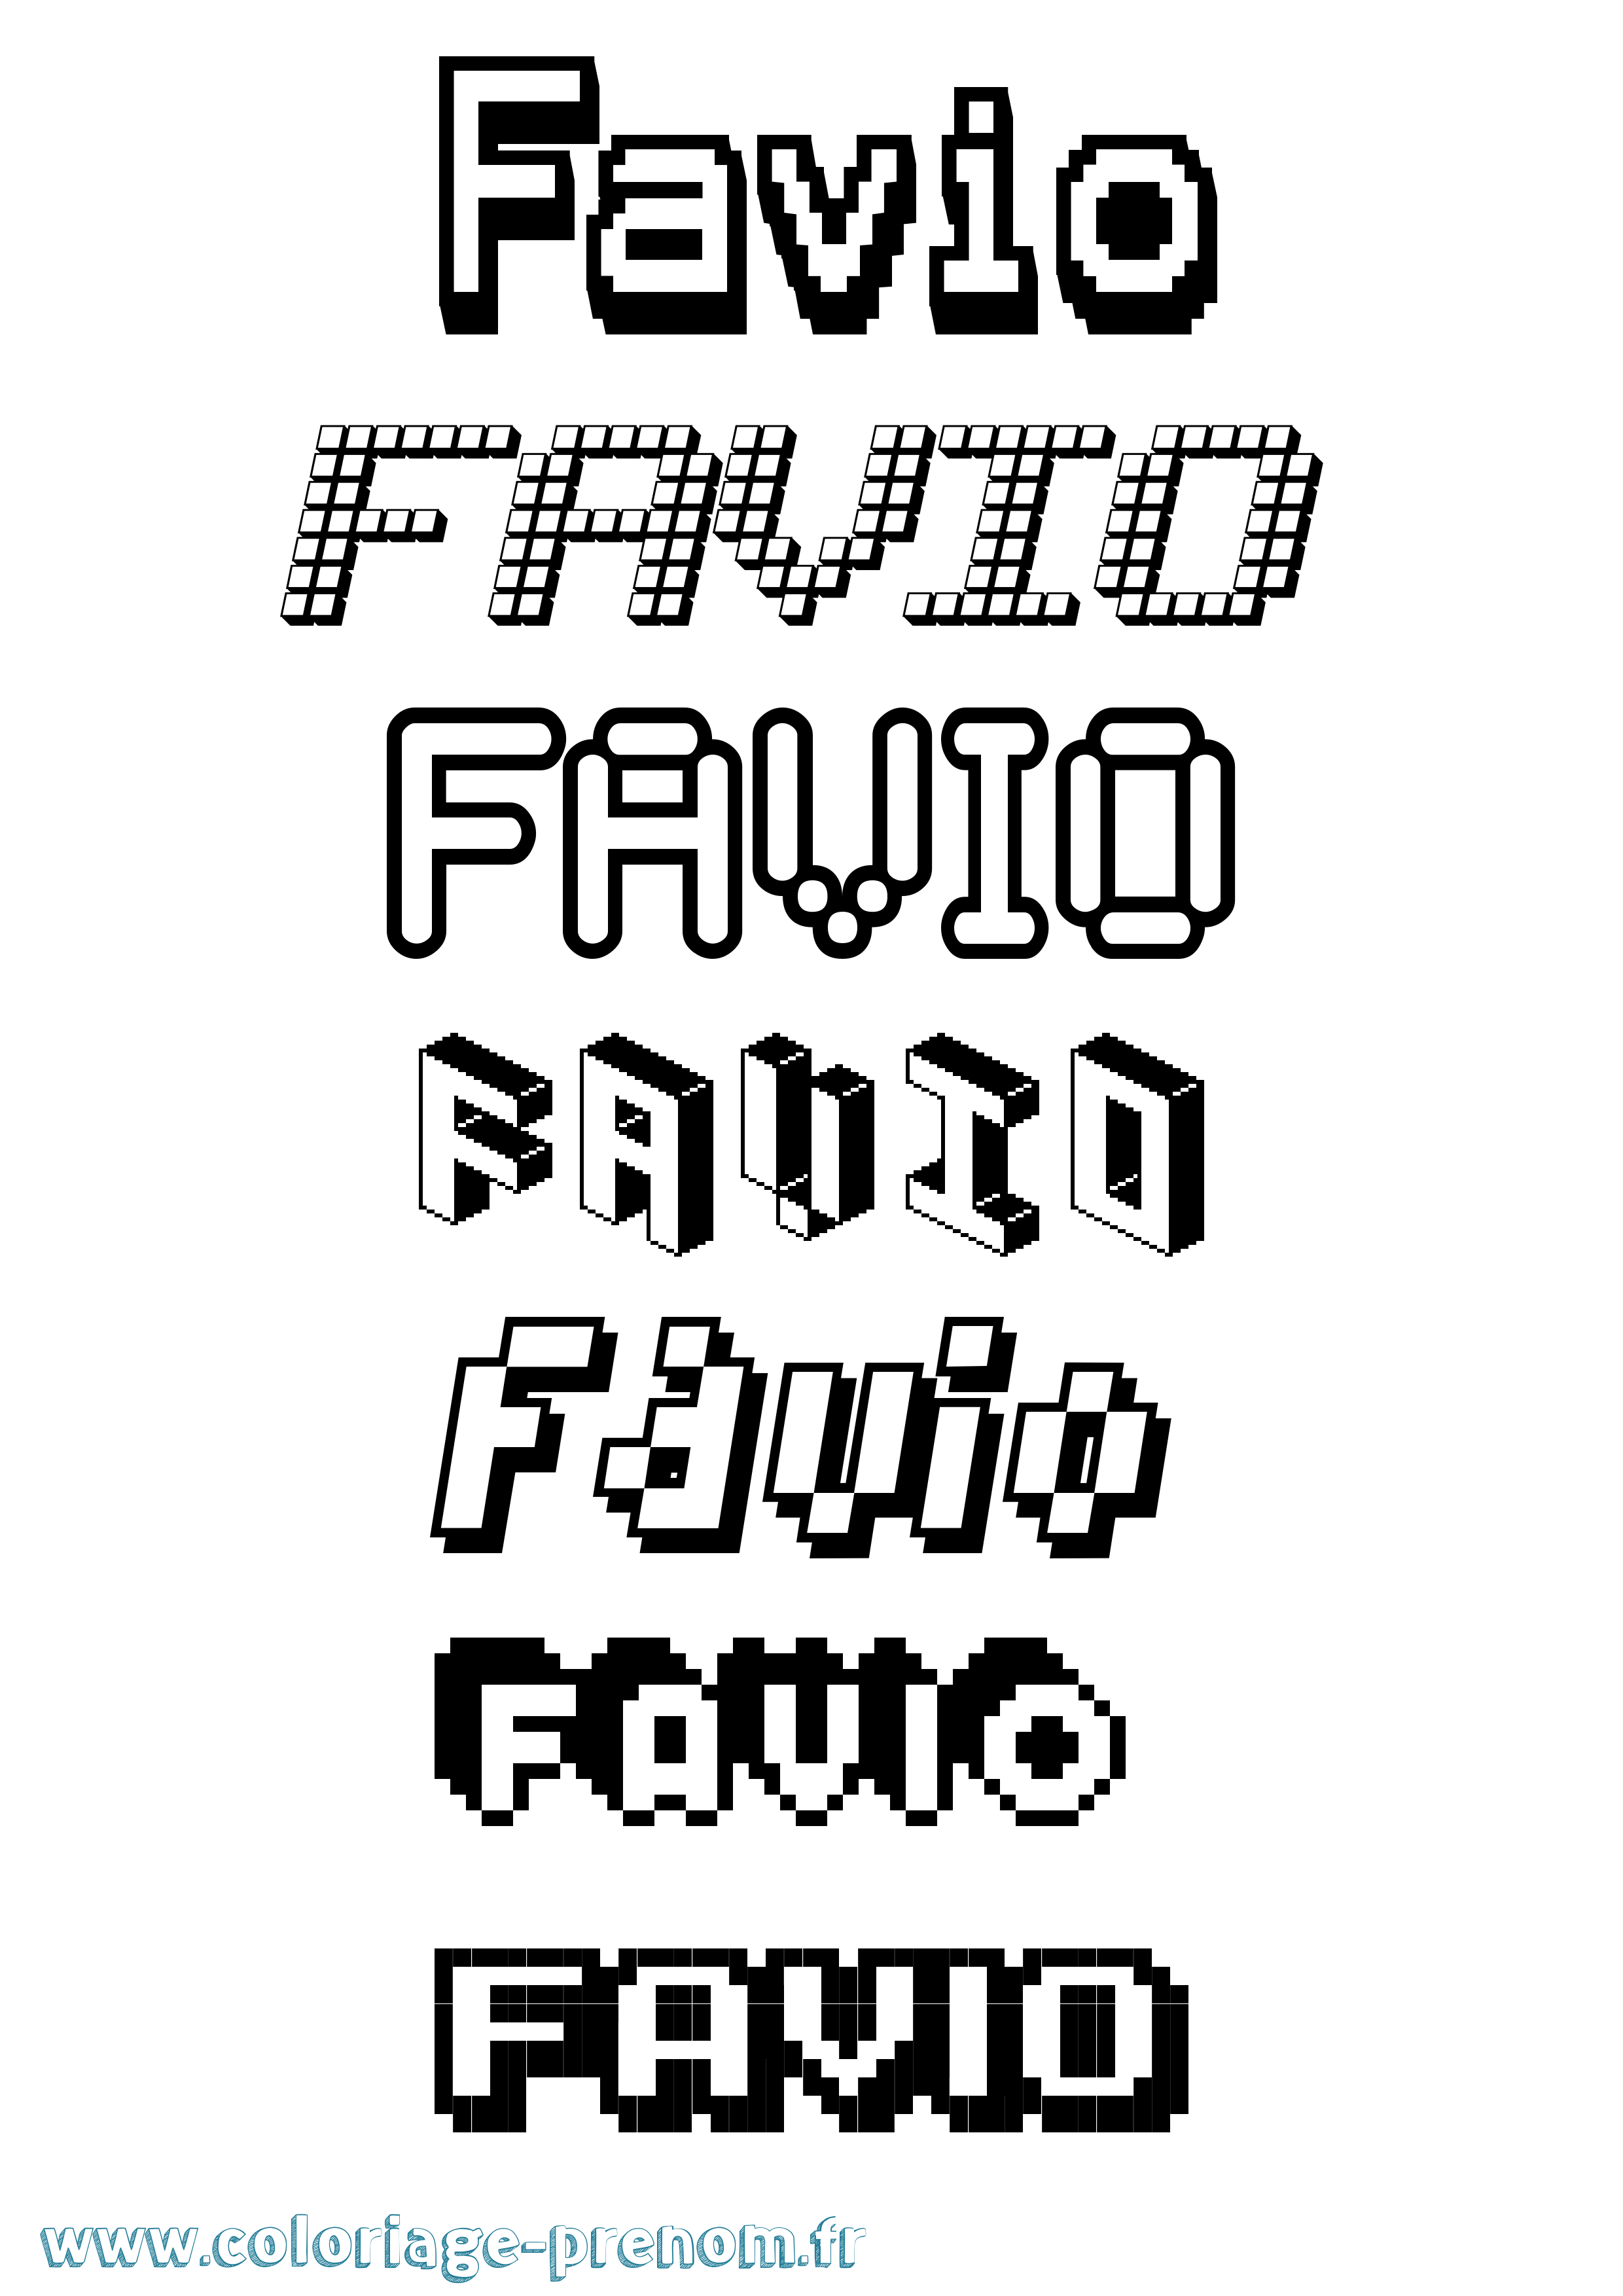 Coloriage prénom Favio Pixel